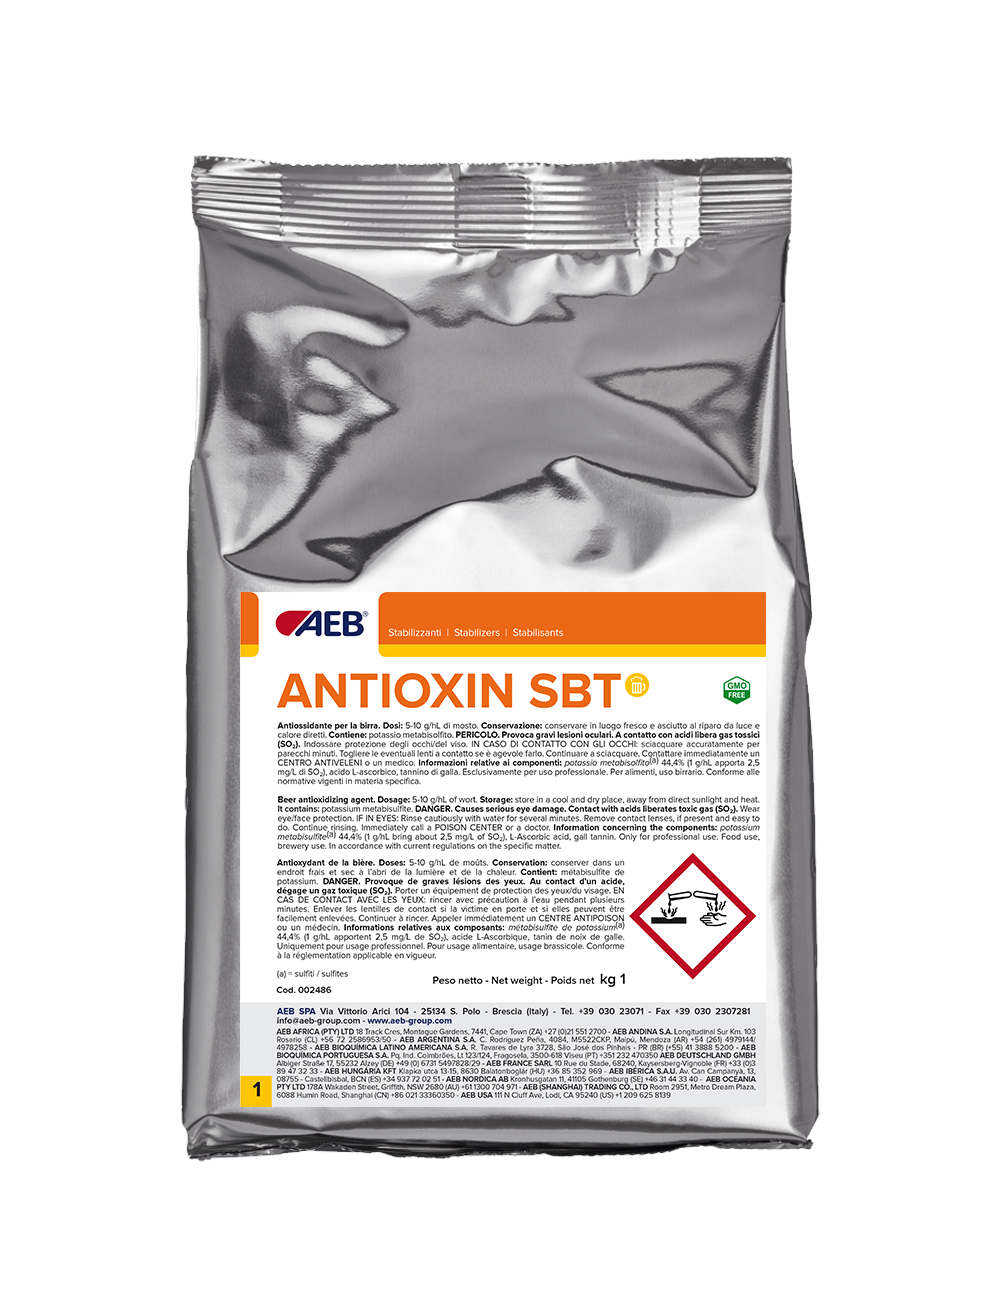 Антиокислитель Антиоксин СБТ (Antioxin SBT)